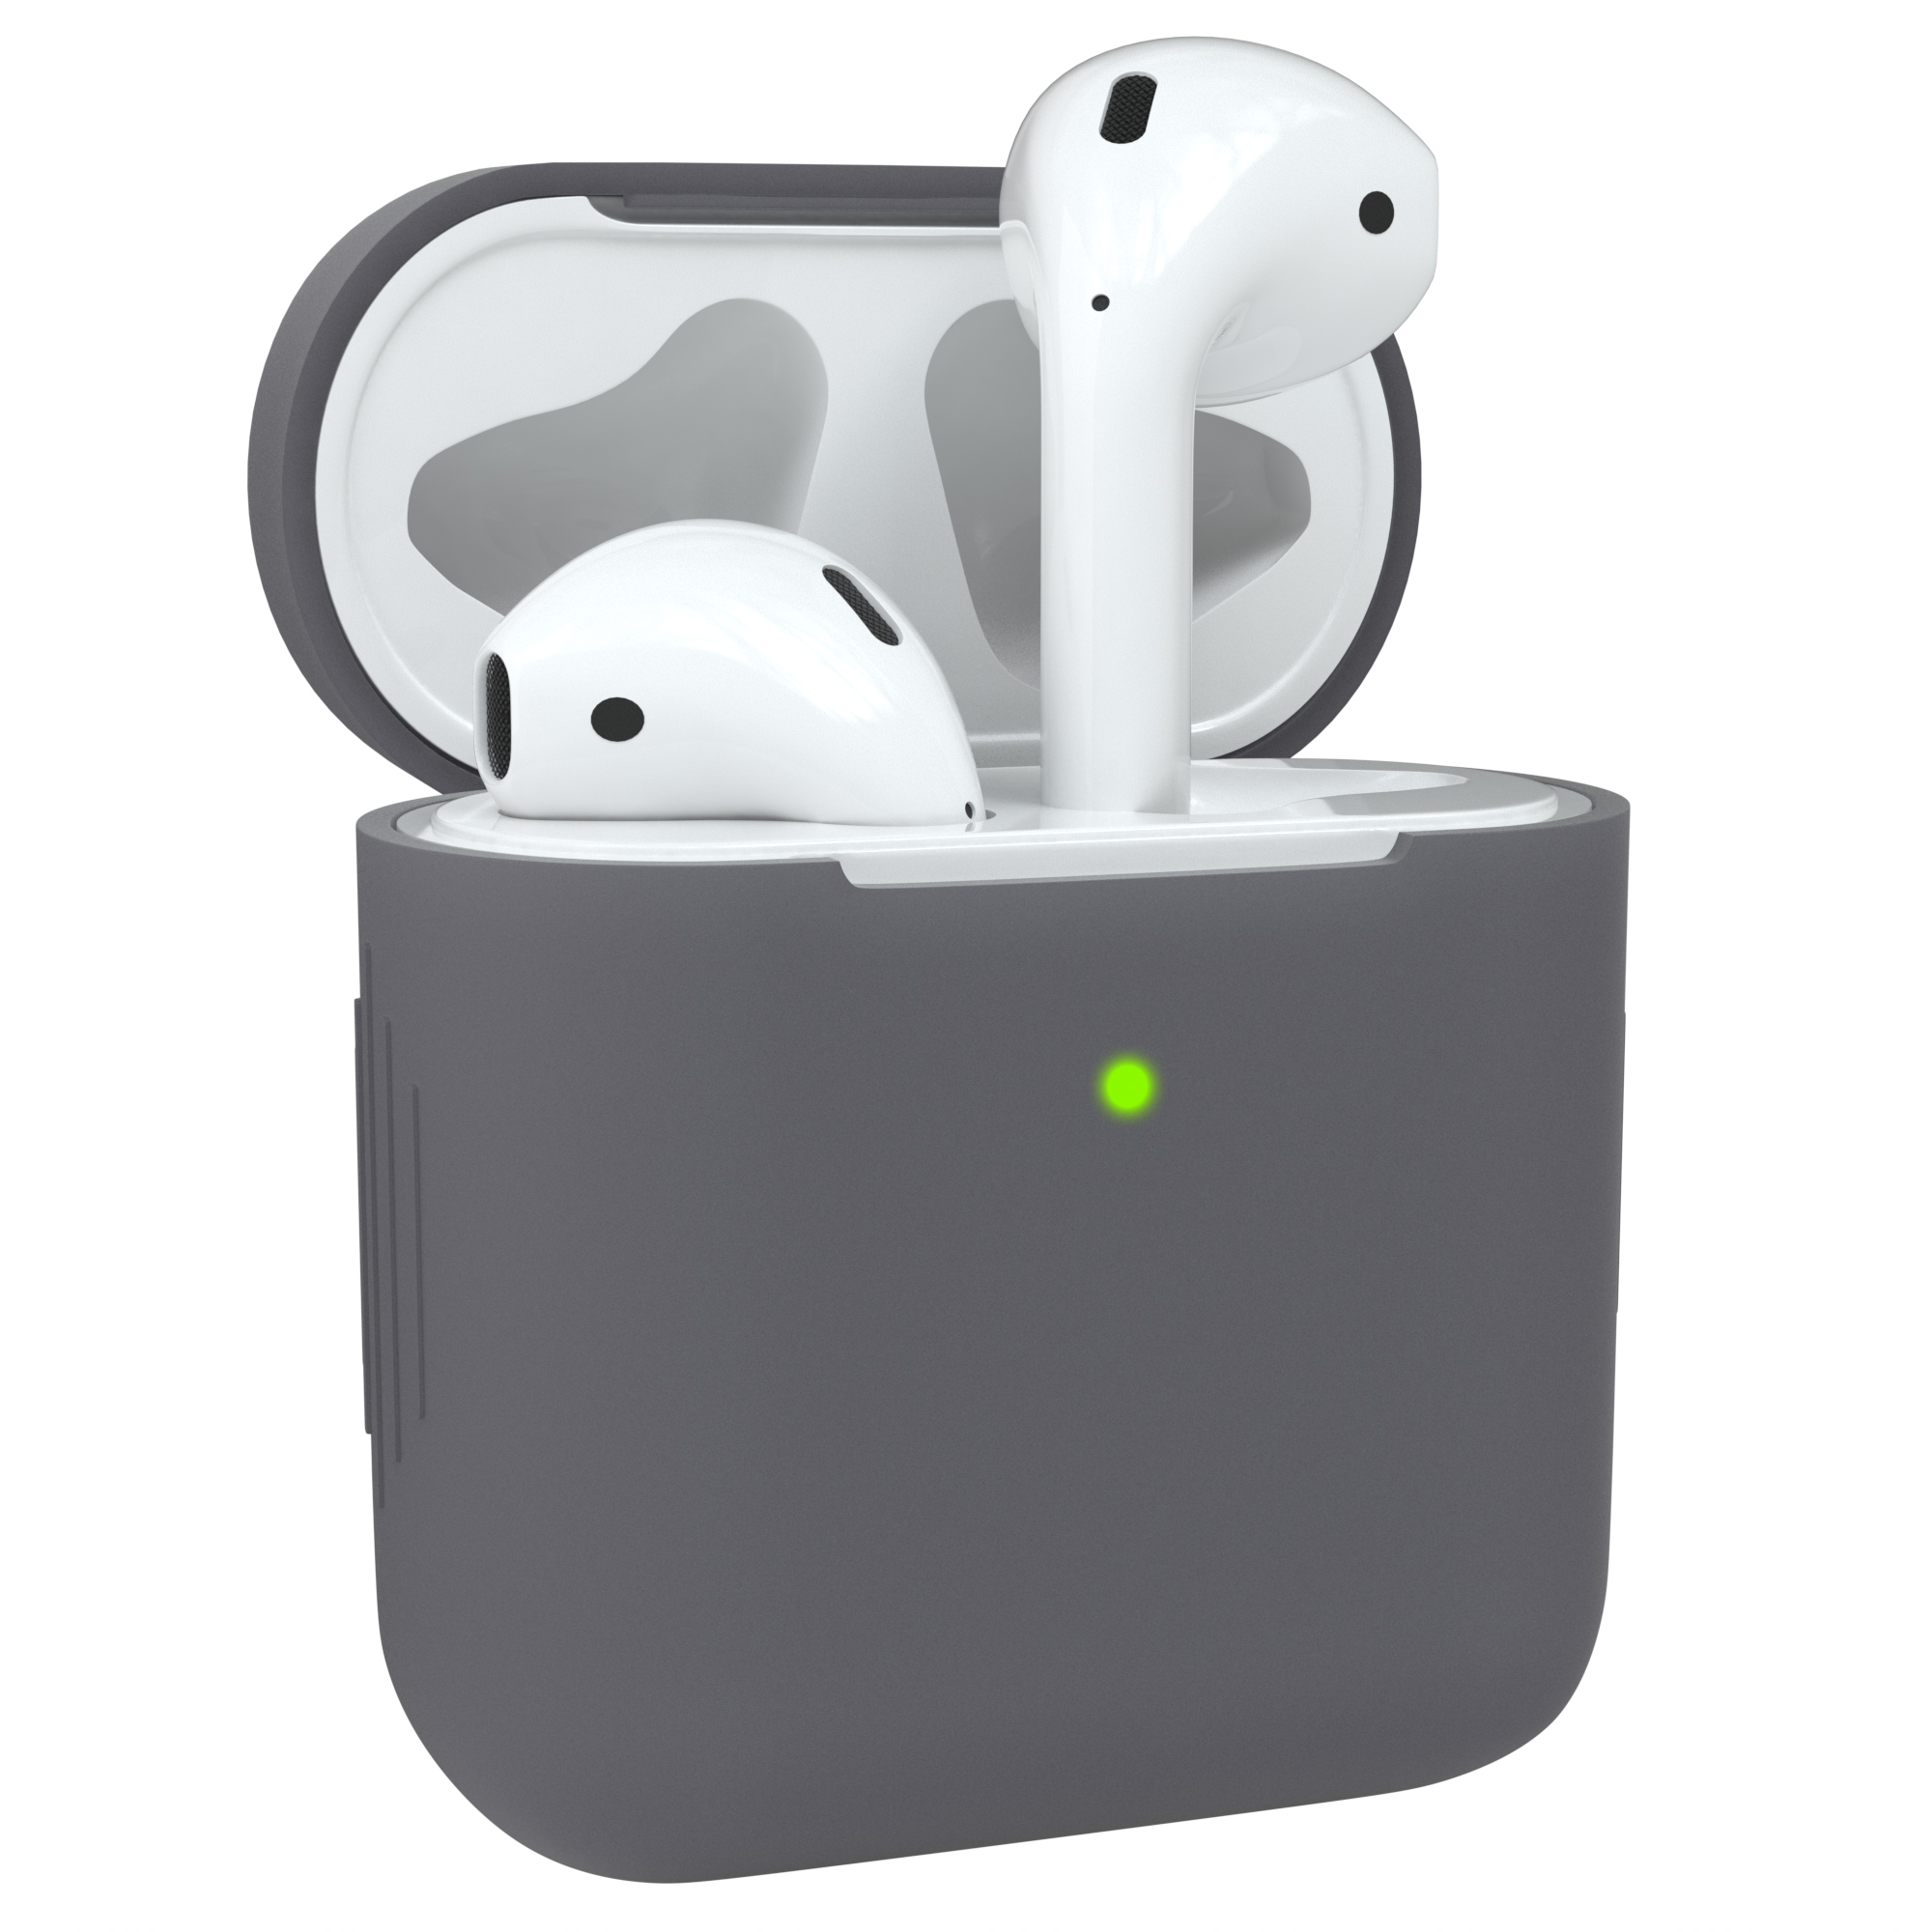 EAZY Anthrazit Sleeve Apple Silikon AirPods für: Grau CASE Case passend Schutzhülle